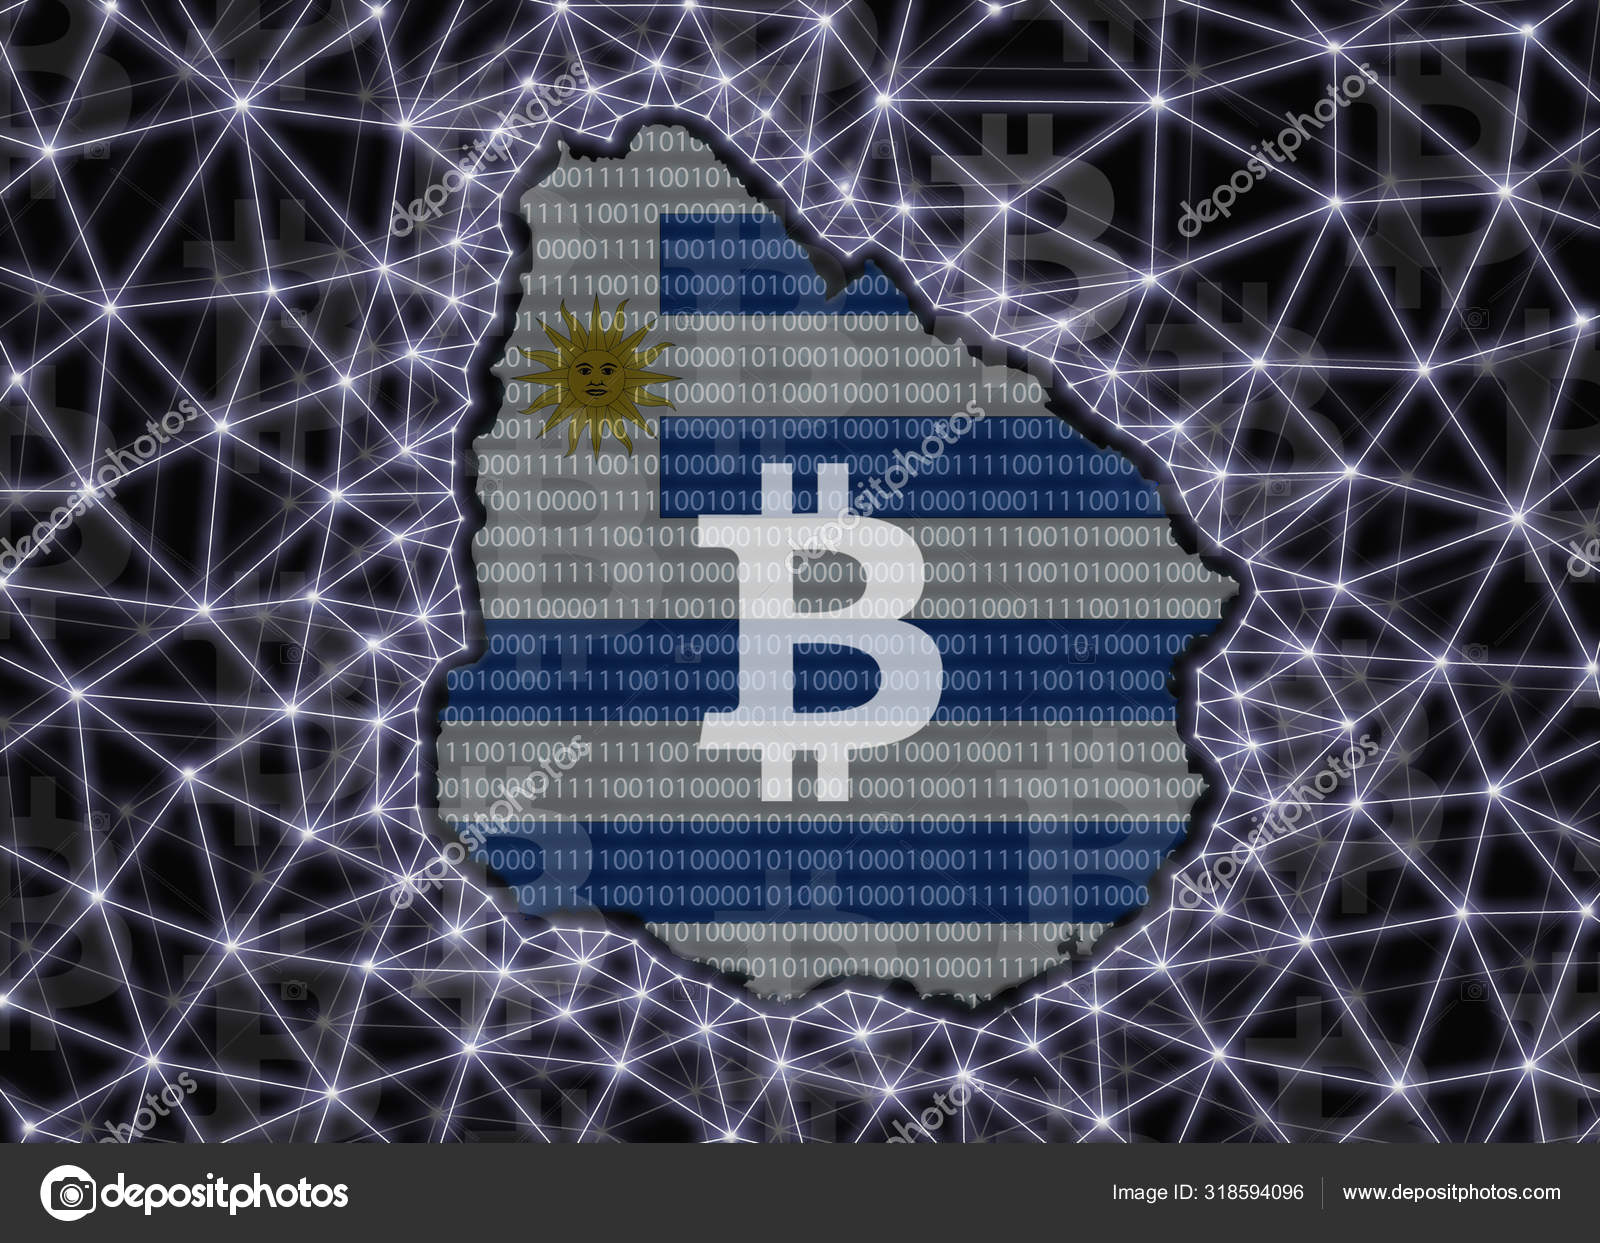 La banca centrale dell' Uruguay ha fatto inversione di marcia sulle cripto?